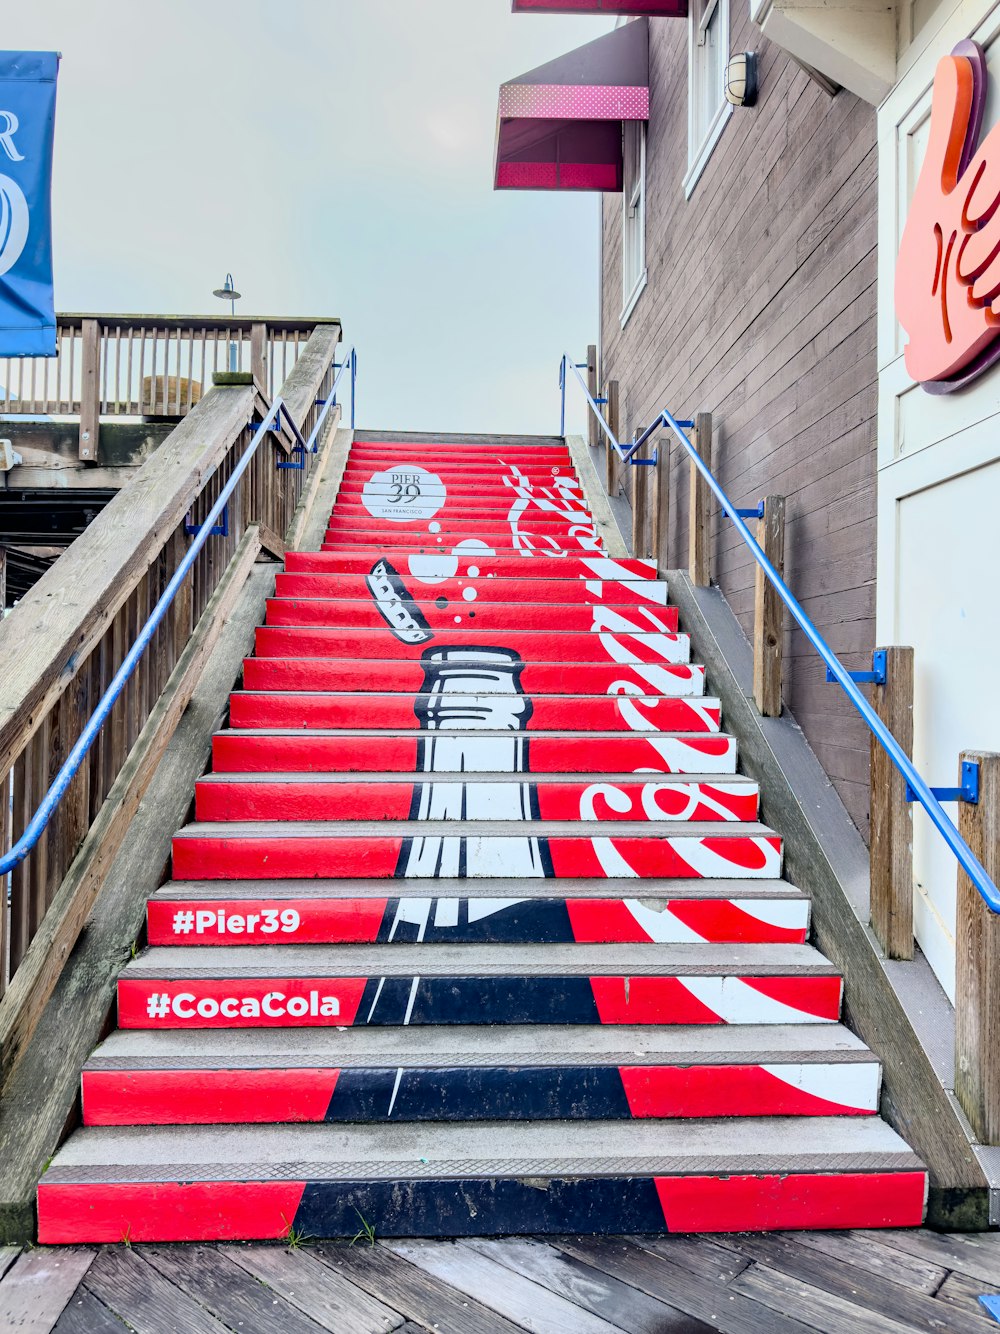 コカ・コーラが描かれた階段